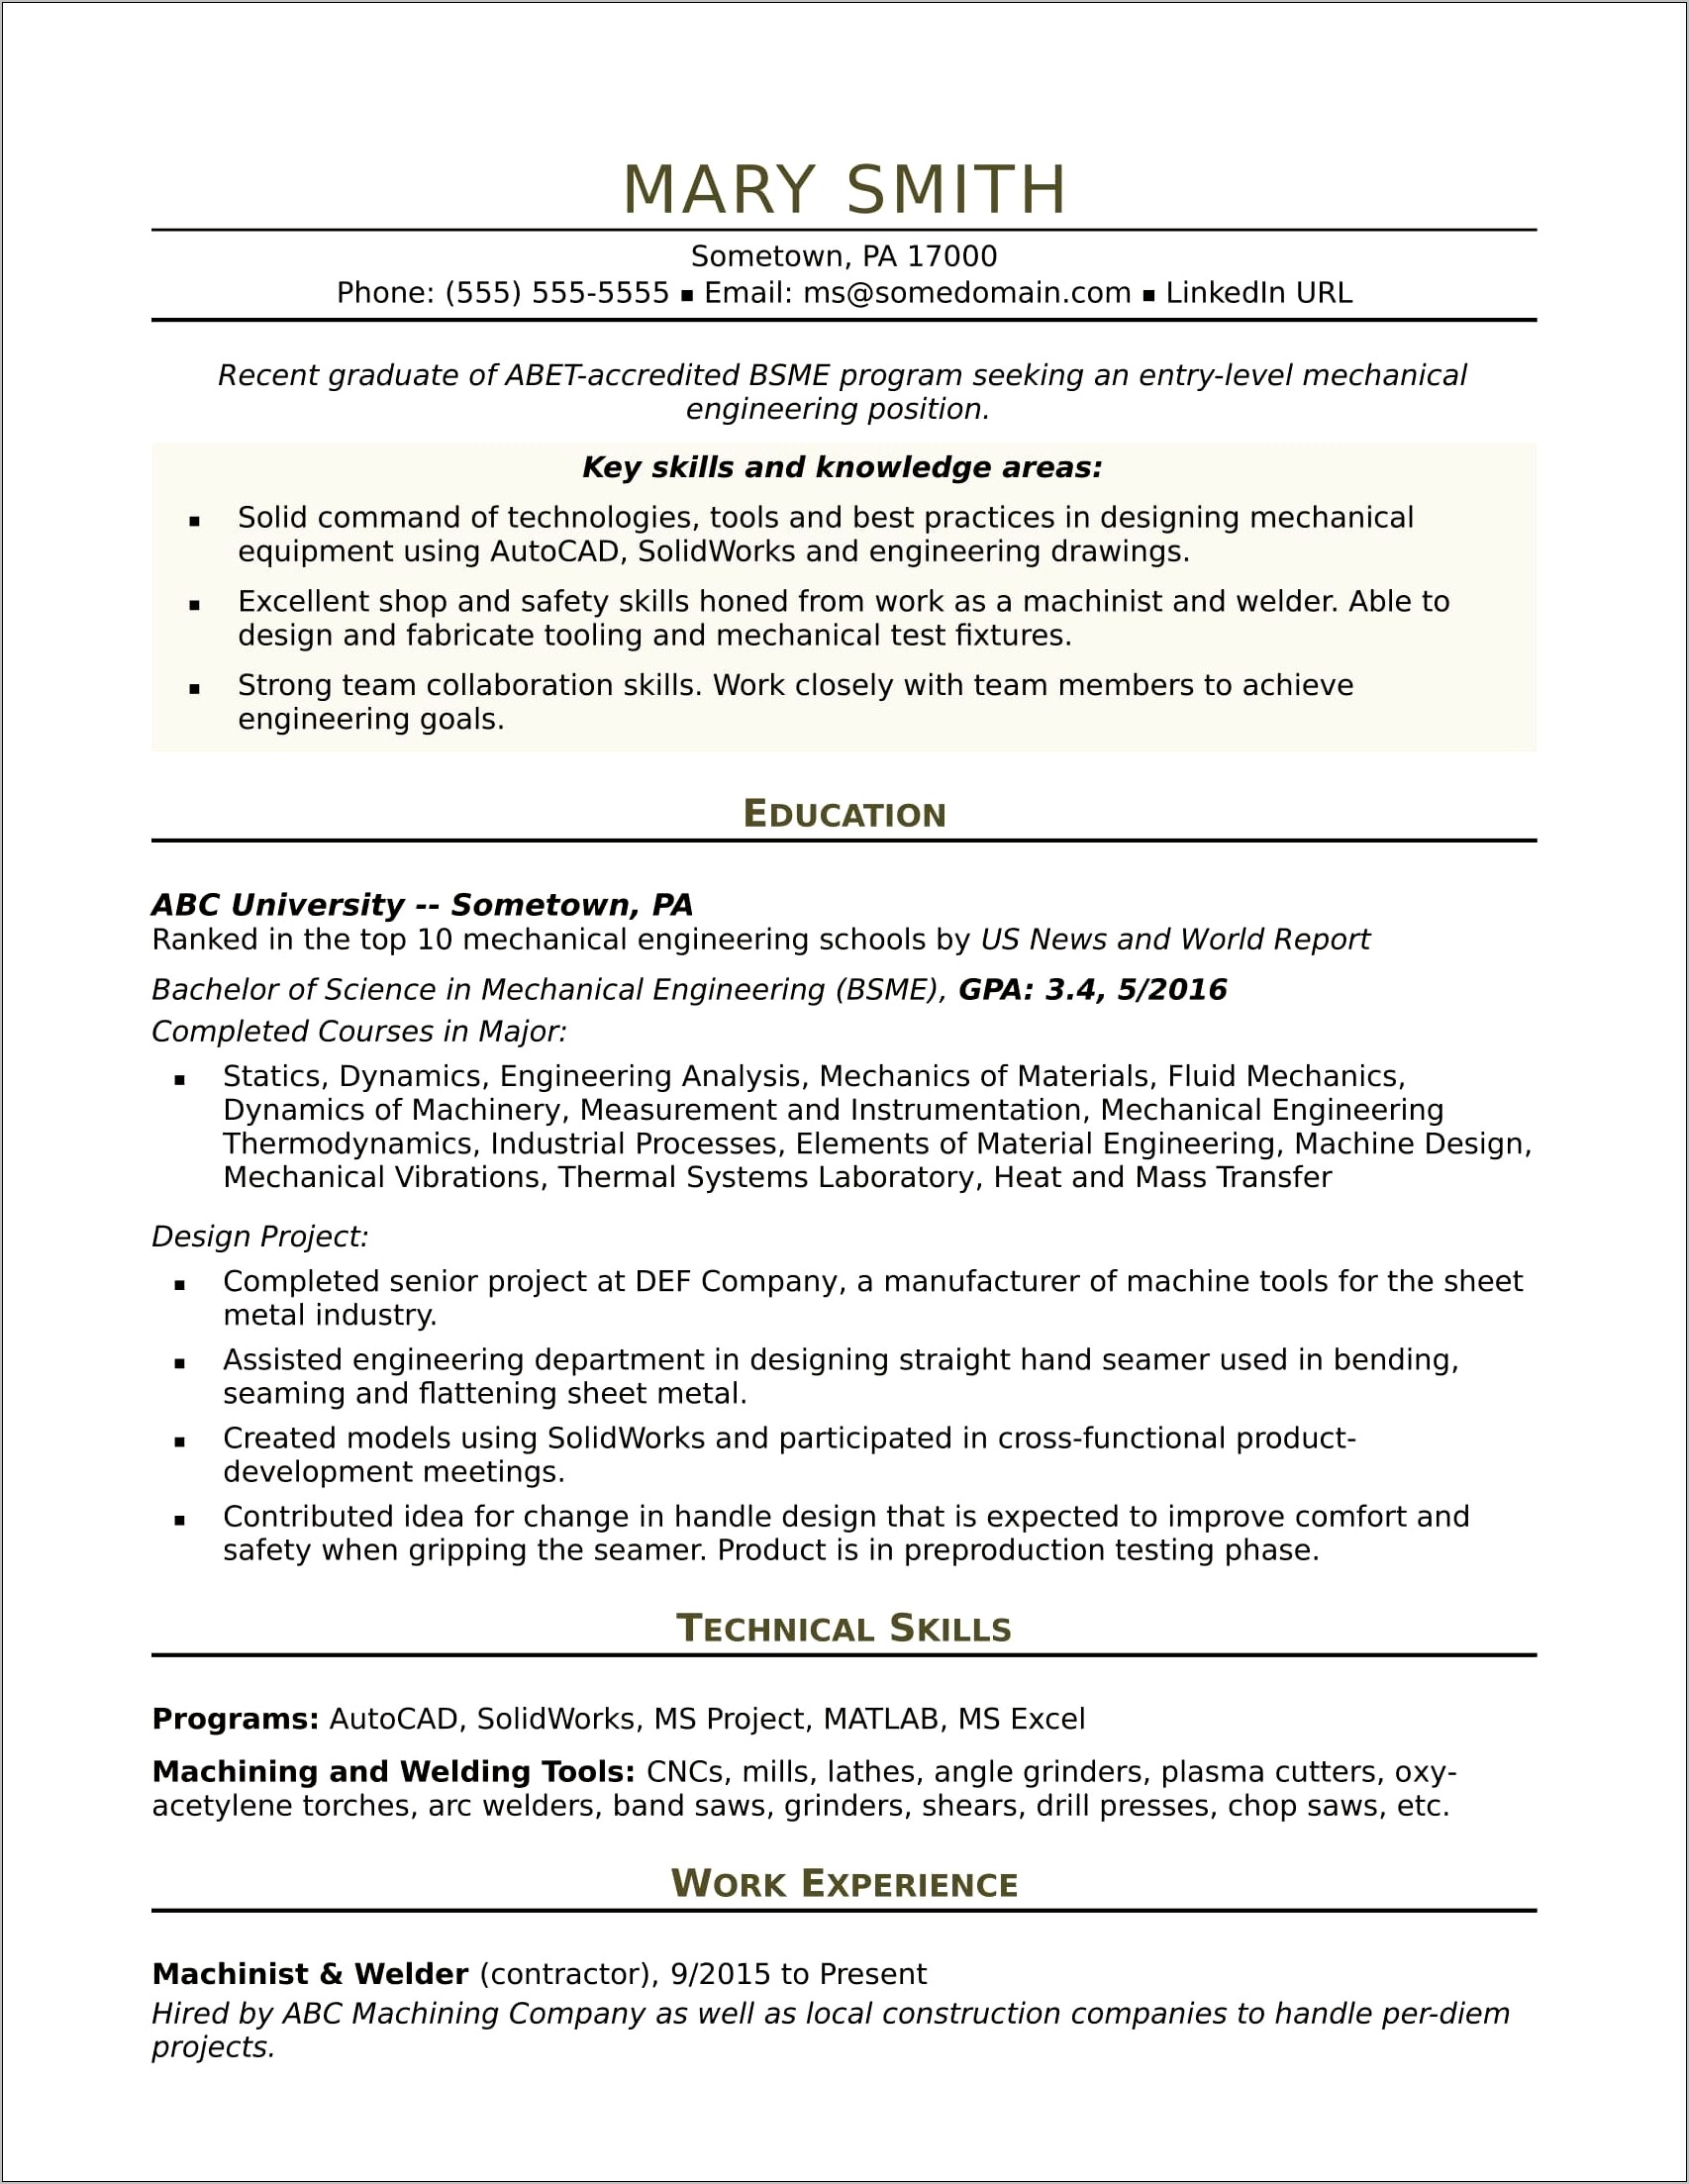 Fresh Graduate Resume Summary Sample